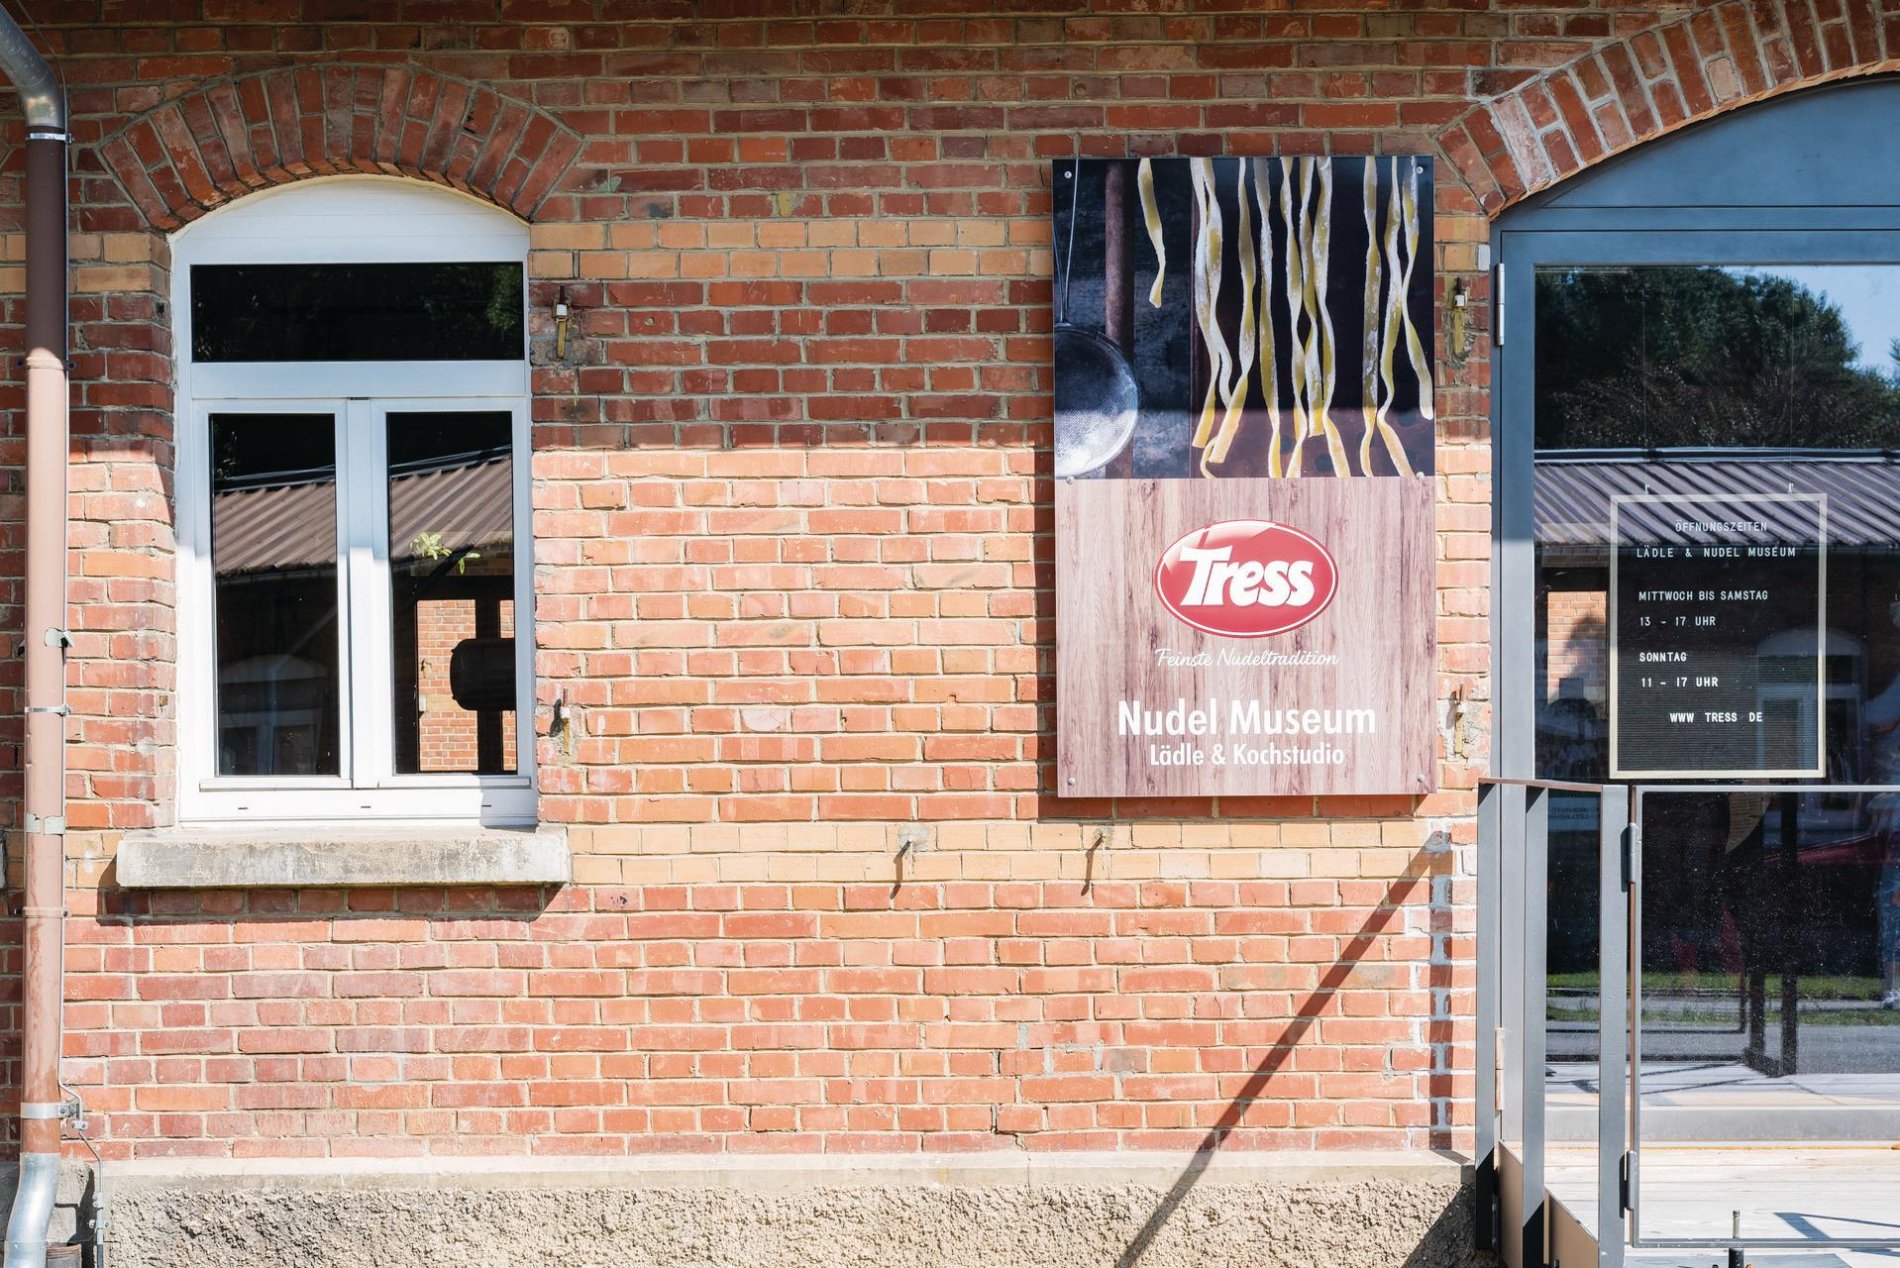 Tress Manufaktur im Albgut - Altes Lager am Rande des ehemaligen Truppenübungsplatz in Münsingen im Biosphärengebiet Schwäbische Alb. An einem Backsteinhaus ist ein Schild mit einem Bild mit Nudeln einer Aufschrift.